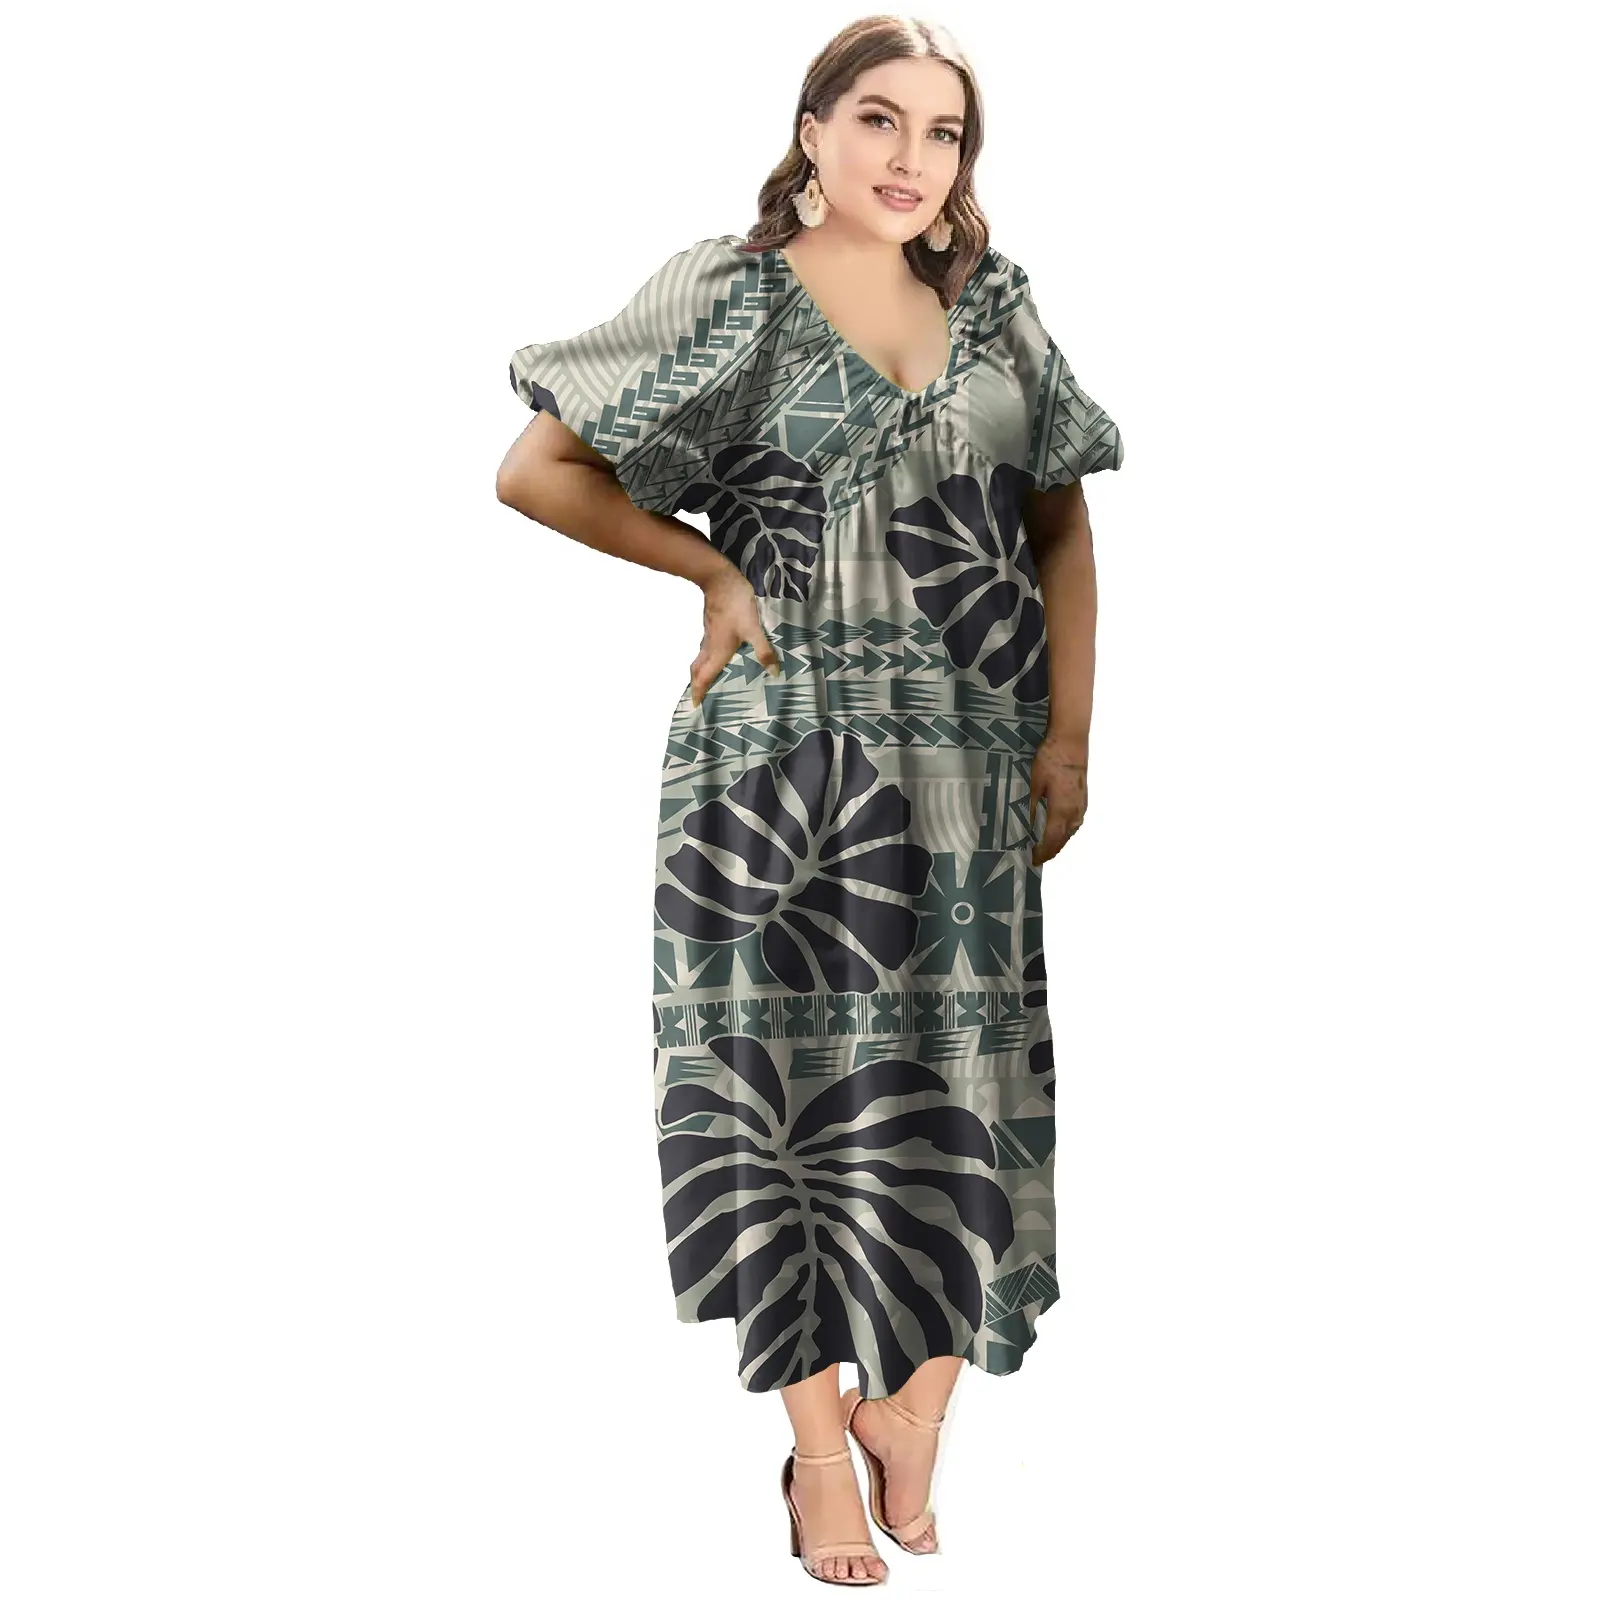 Baju wanita ukuran besar terlaris gaun wanita desain Tribal polinesian polinean kustom gaun wanita berlipat panjang